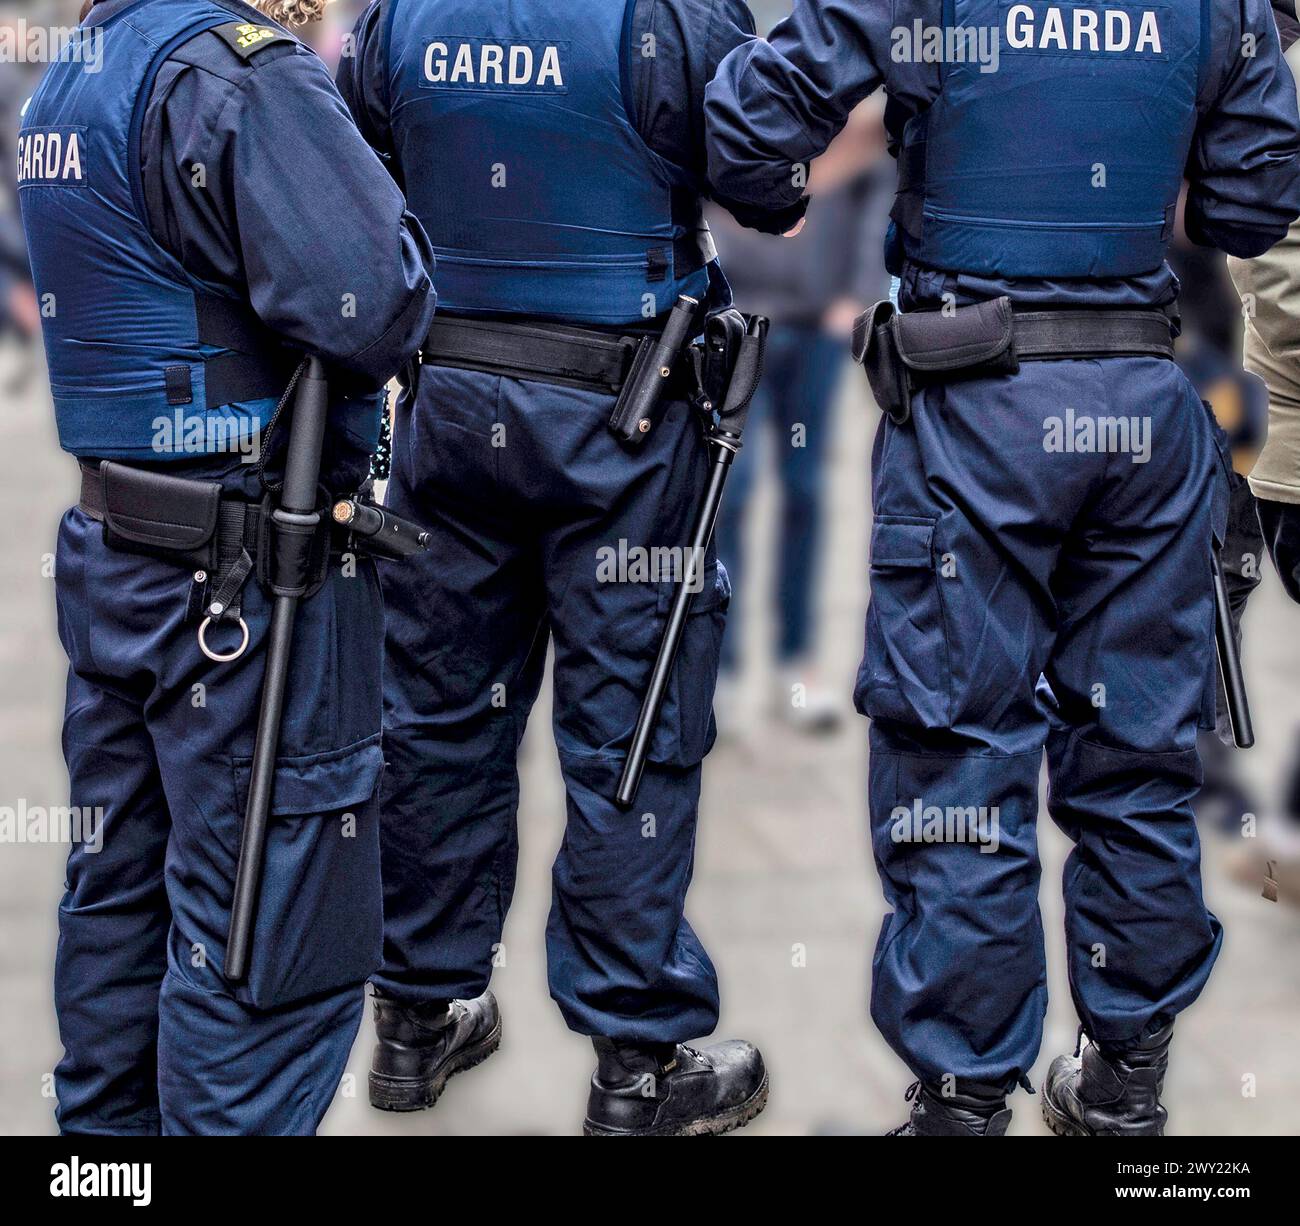 Membres de l'unité de l'ordre public de la Garda dans la rue à Dublin, Irlande. Banque D'Images